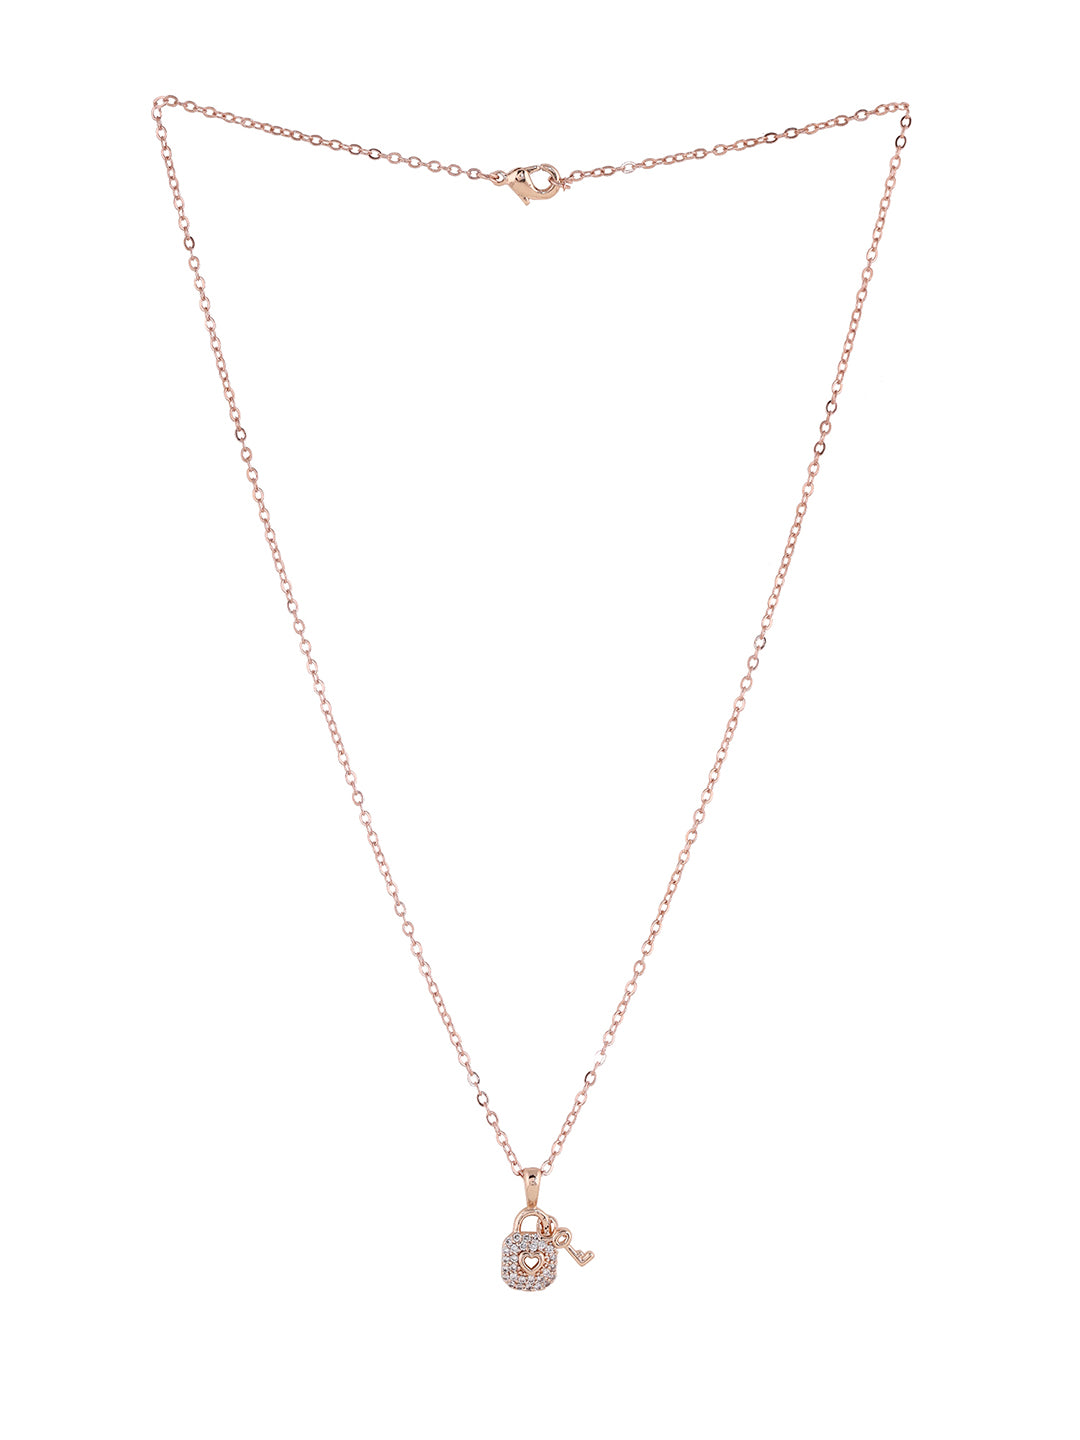 Prita Valentine's Elegance Jewellery Set